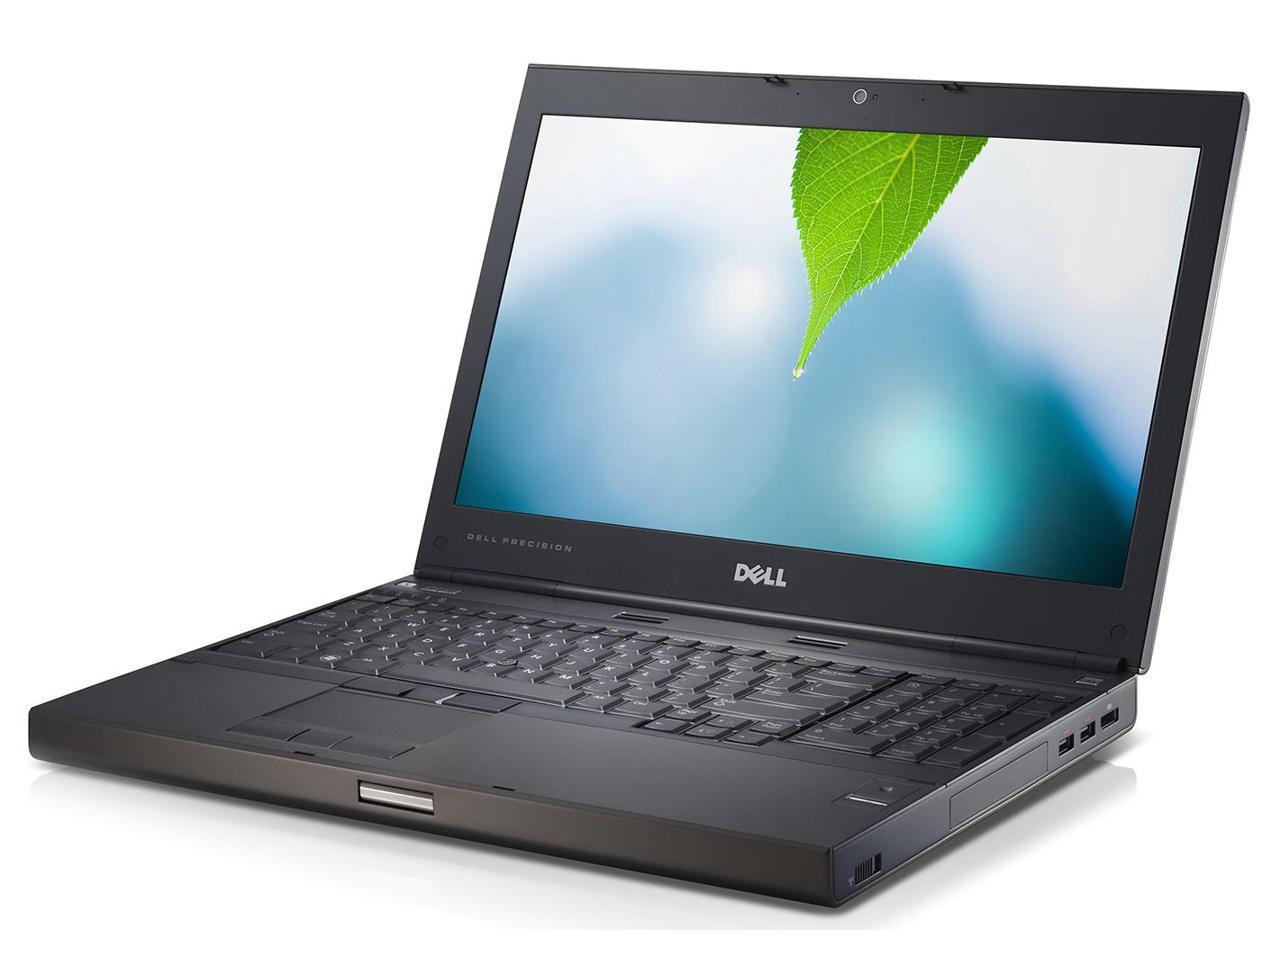 Dell Precision M4600 Laptop Computer, Quad Core i7 2760M 2.4Ghz, 8GB DDR3,  750GB Hard Drive, DVDRW, 15.6